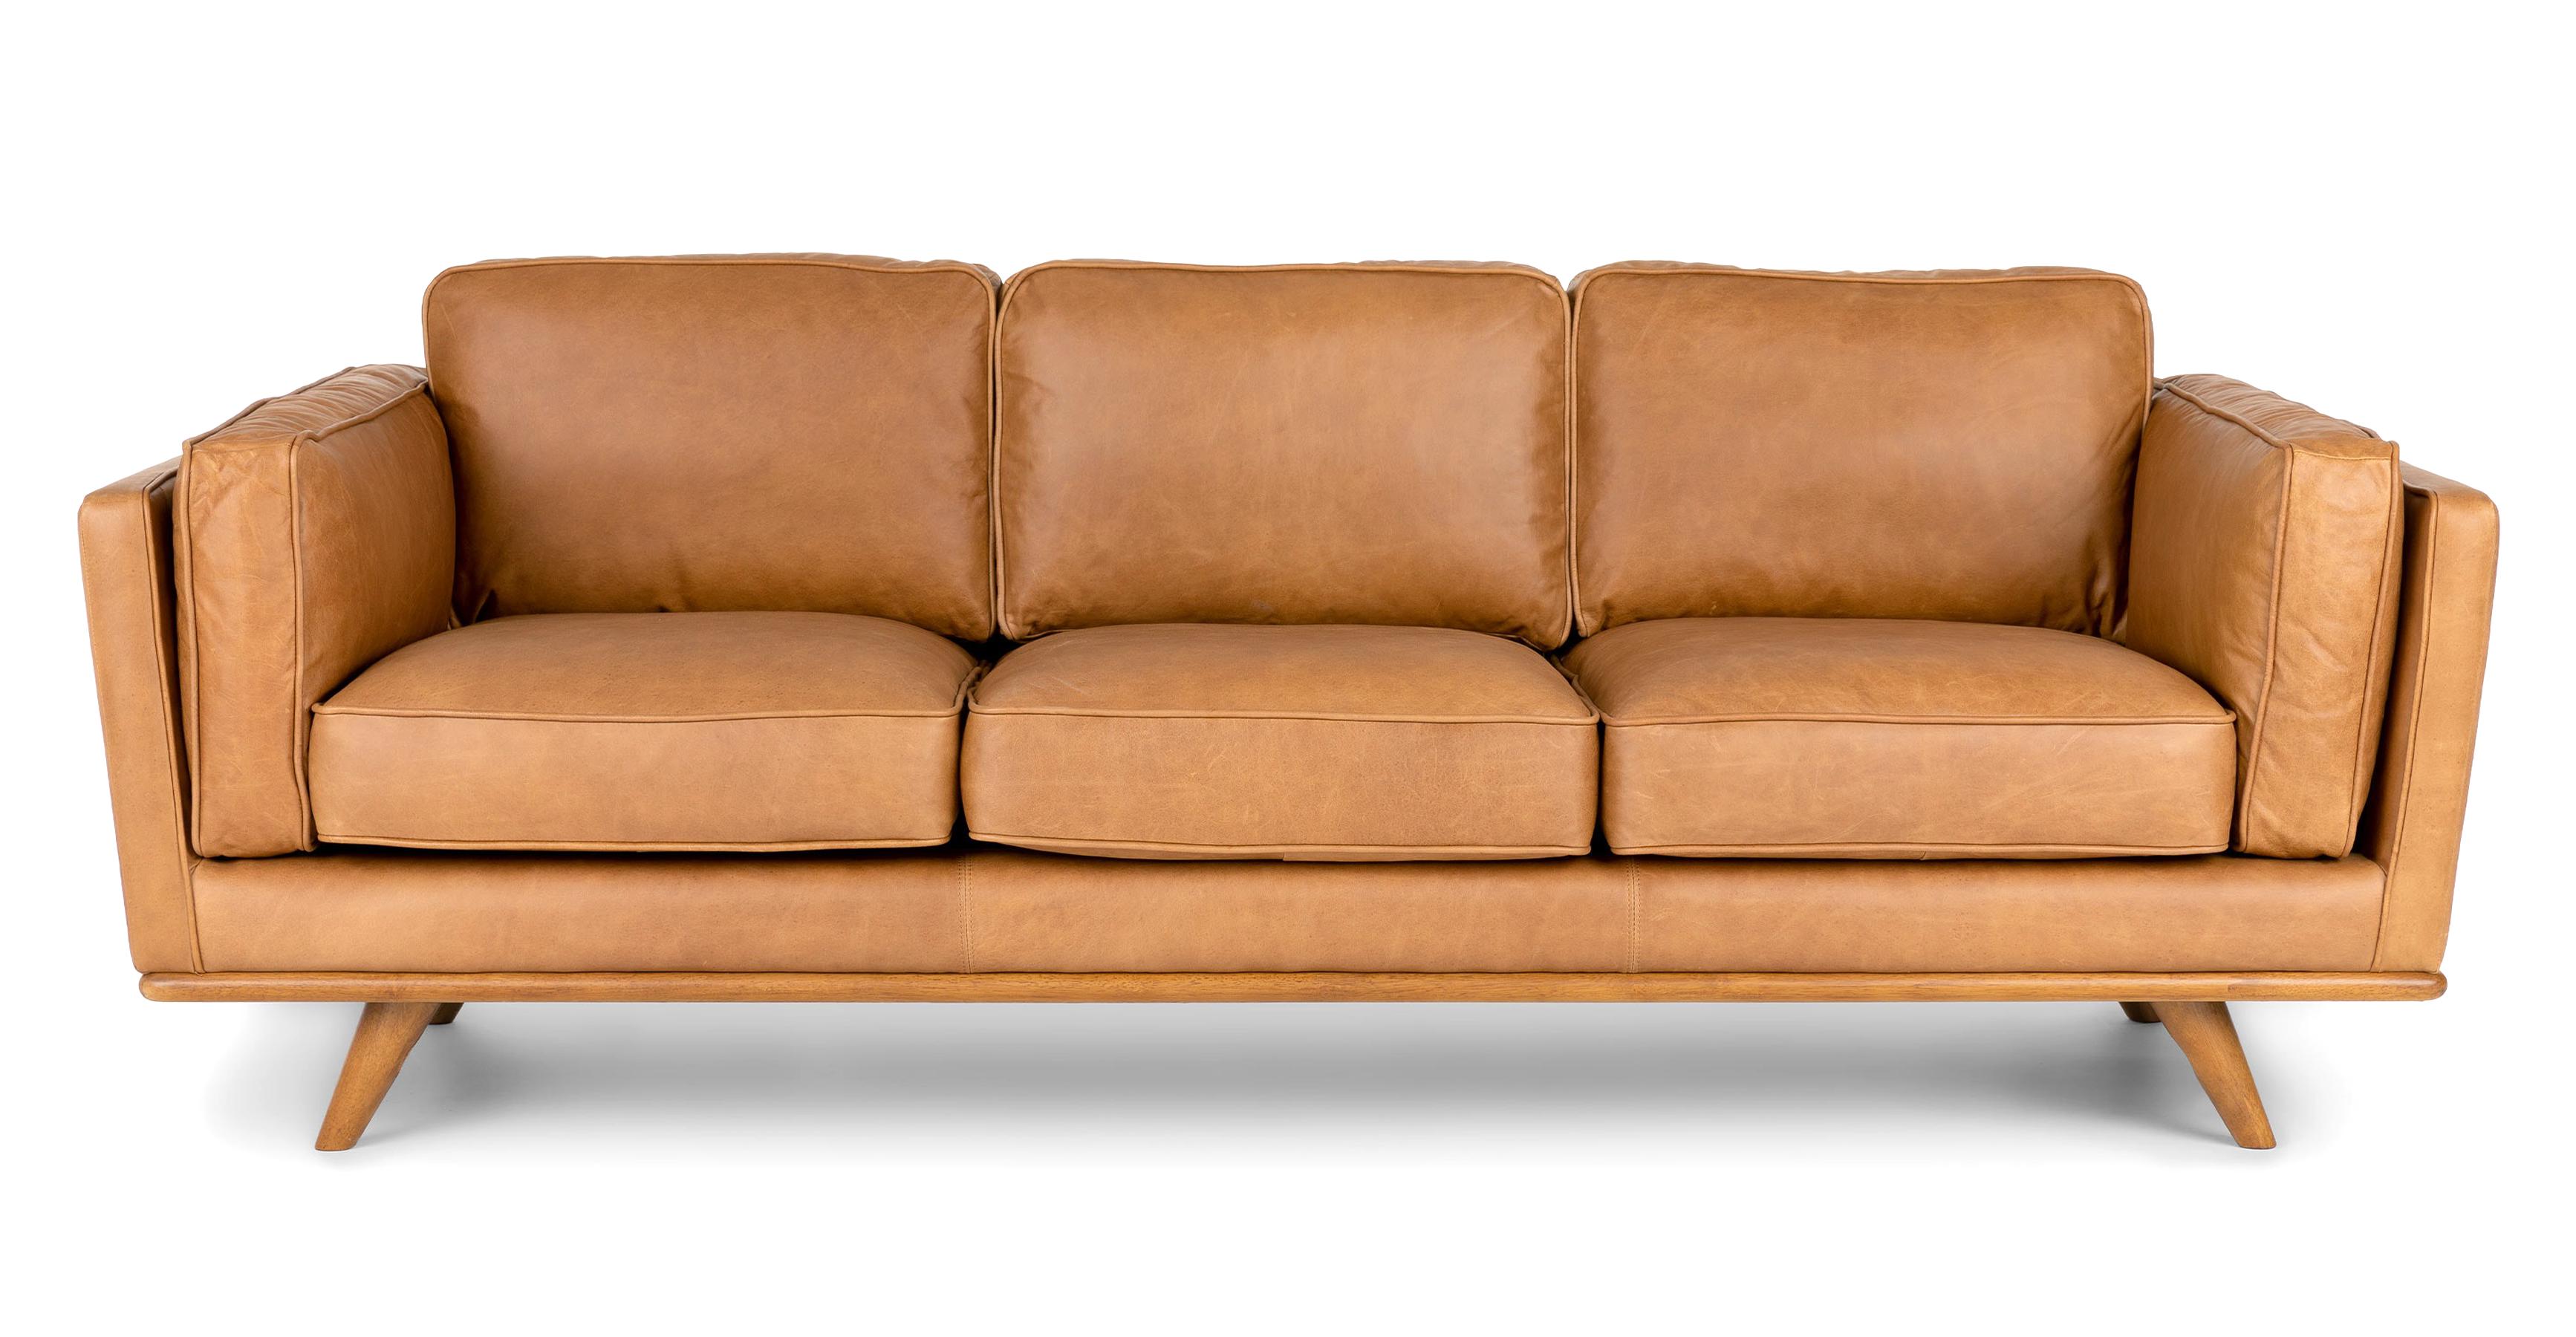 used leather sofa value